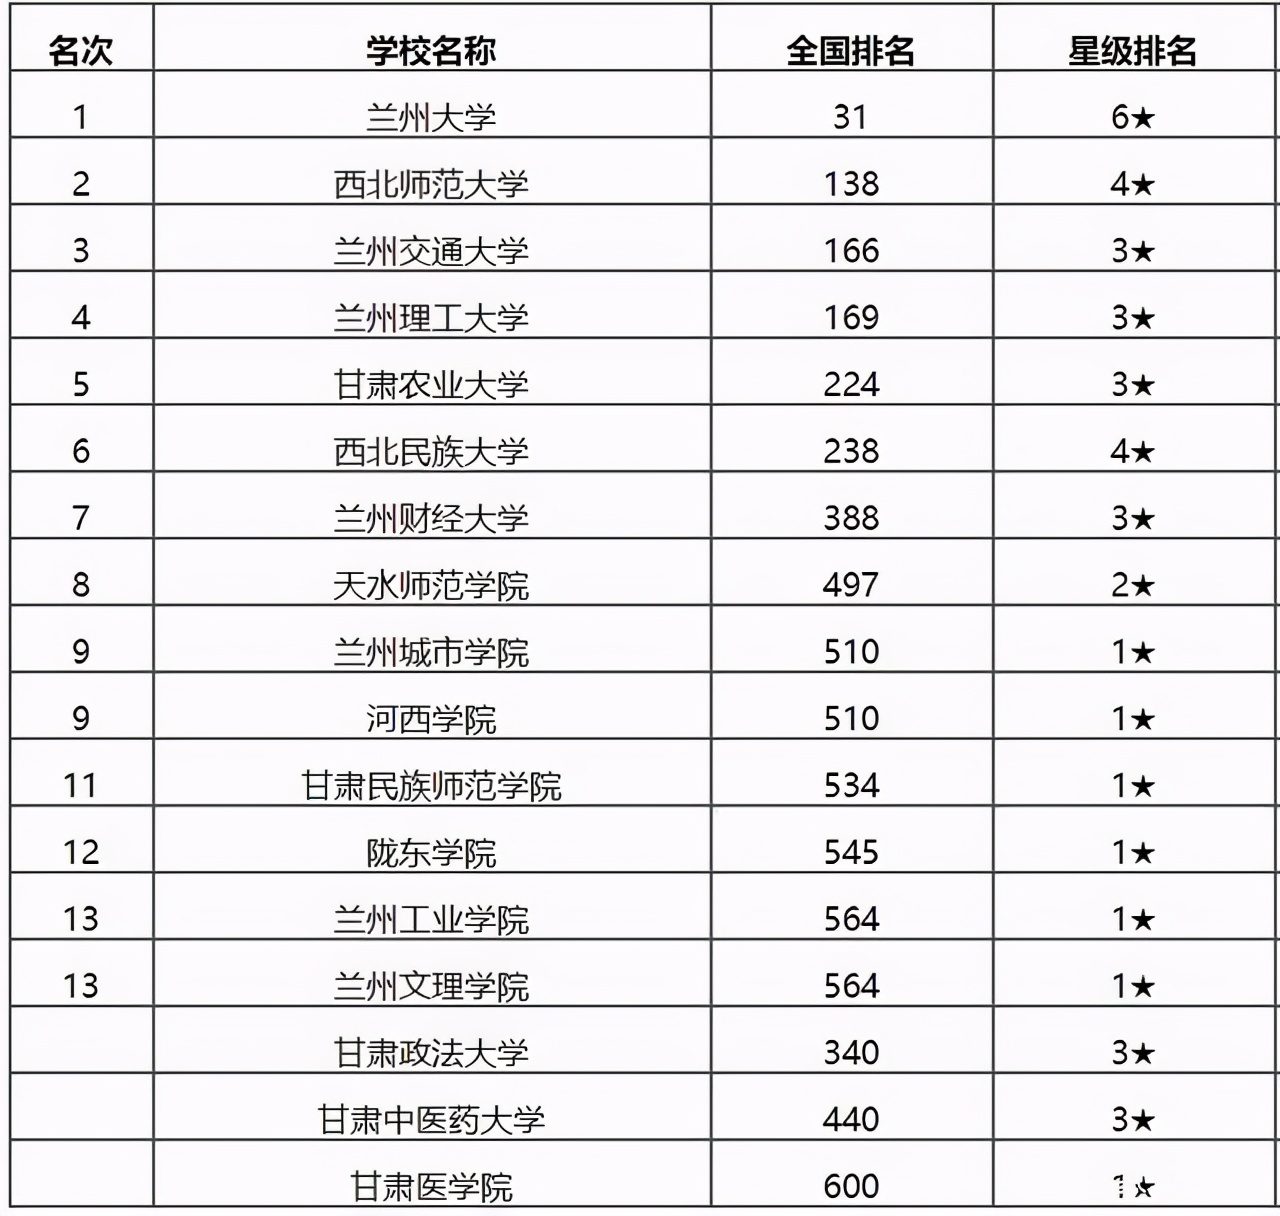 2020甘肃二本大学排名_2020软科中国最好学科排名发布!甘肃8所高校61个学科